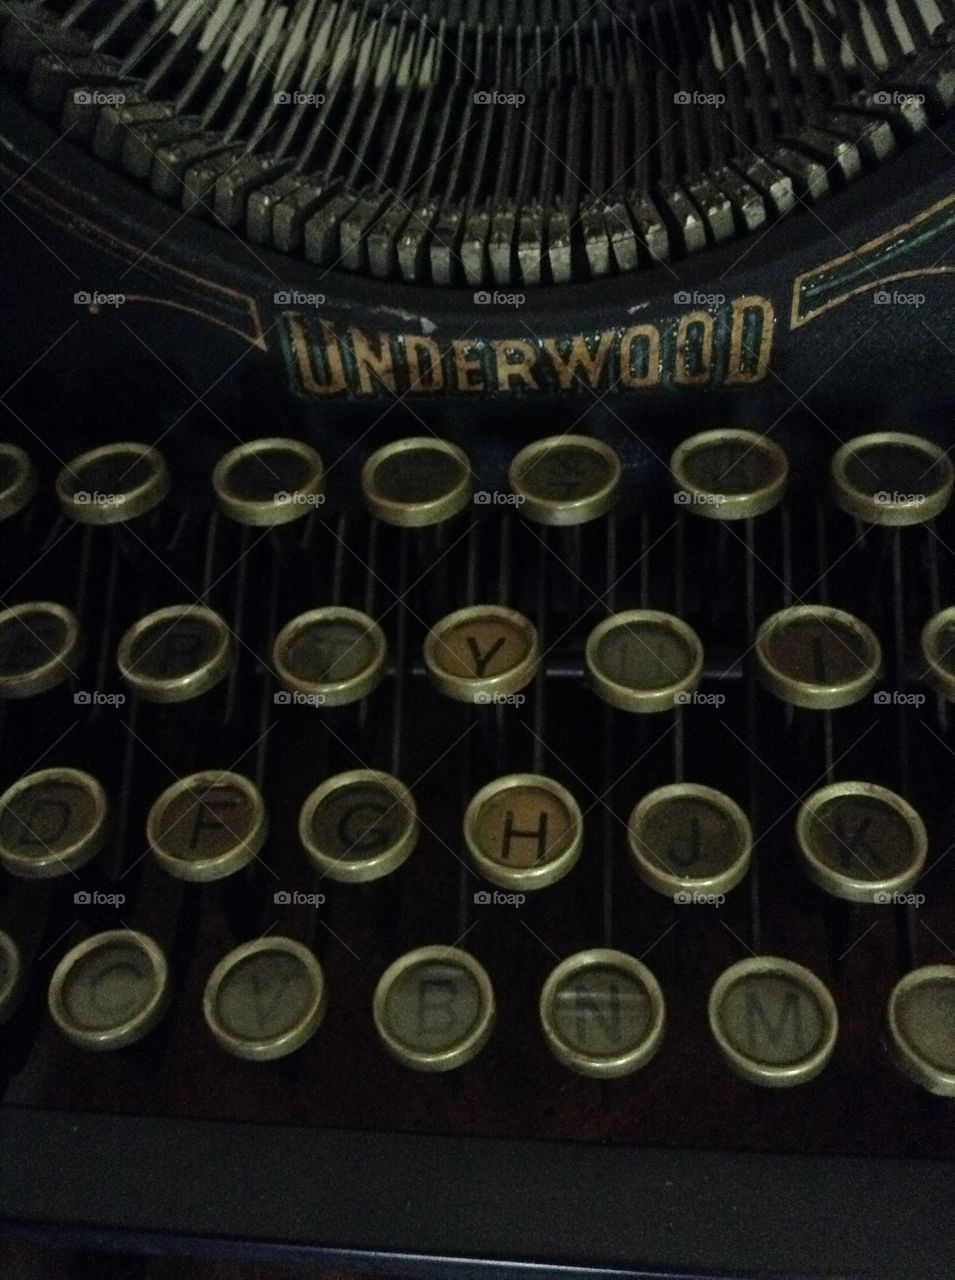 My Type, Just Older. Antique Underwood typewriter